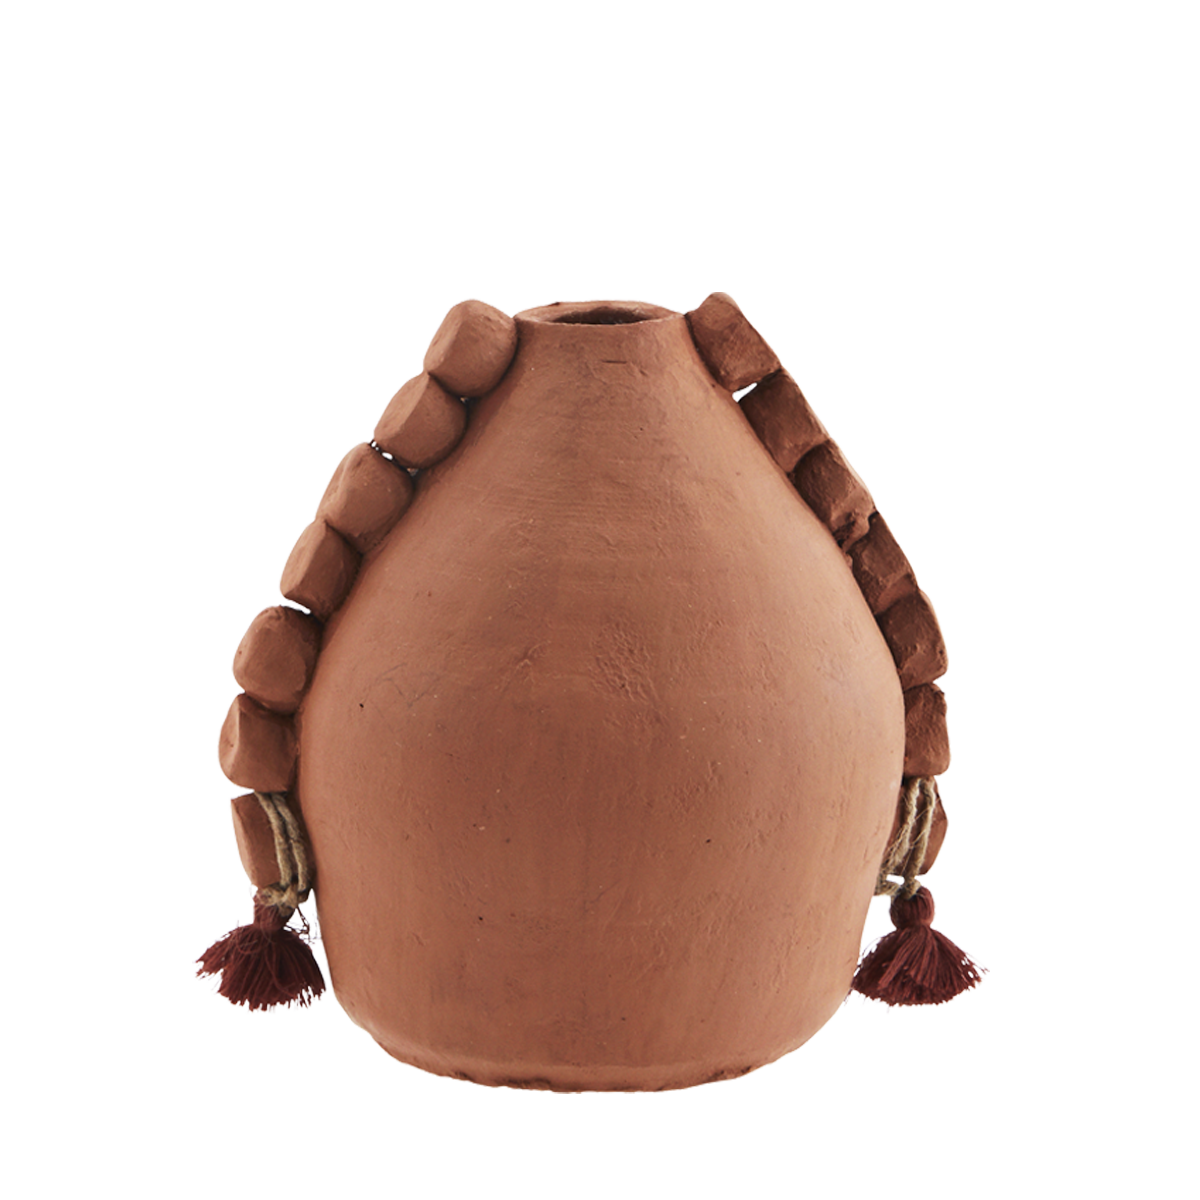 Handmade terracotta vase w/ tassels